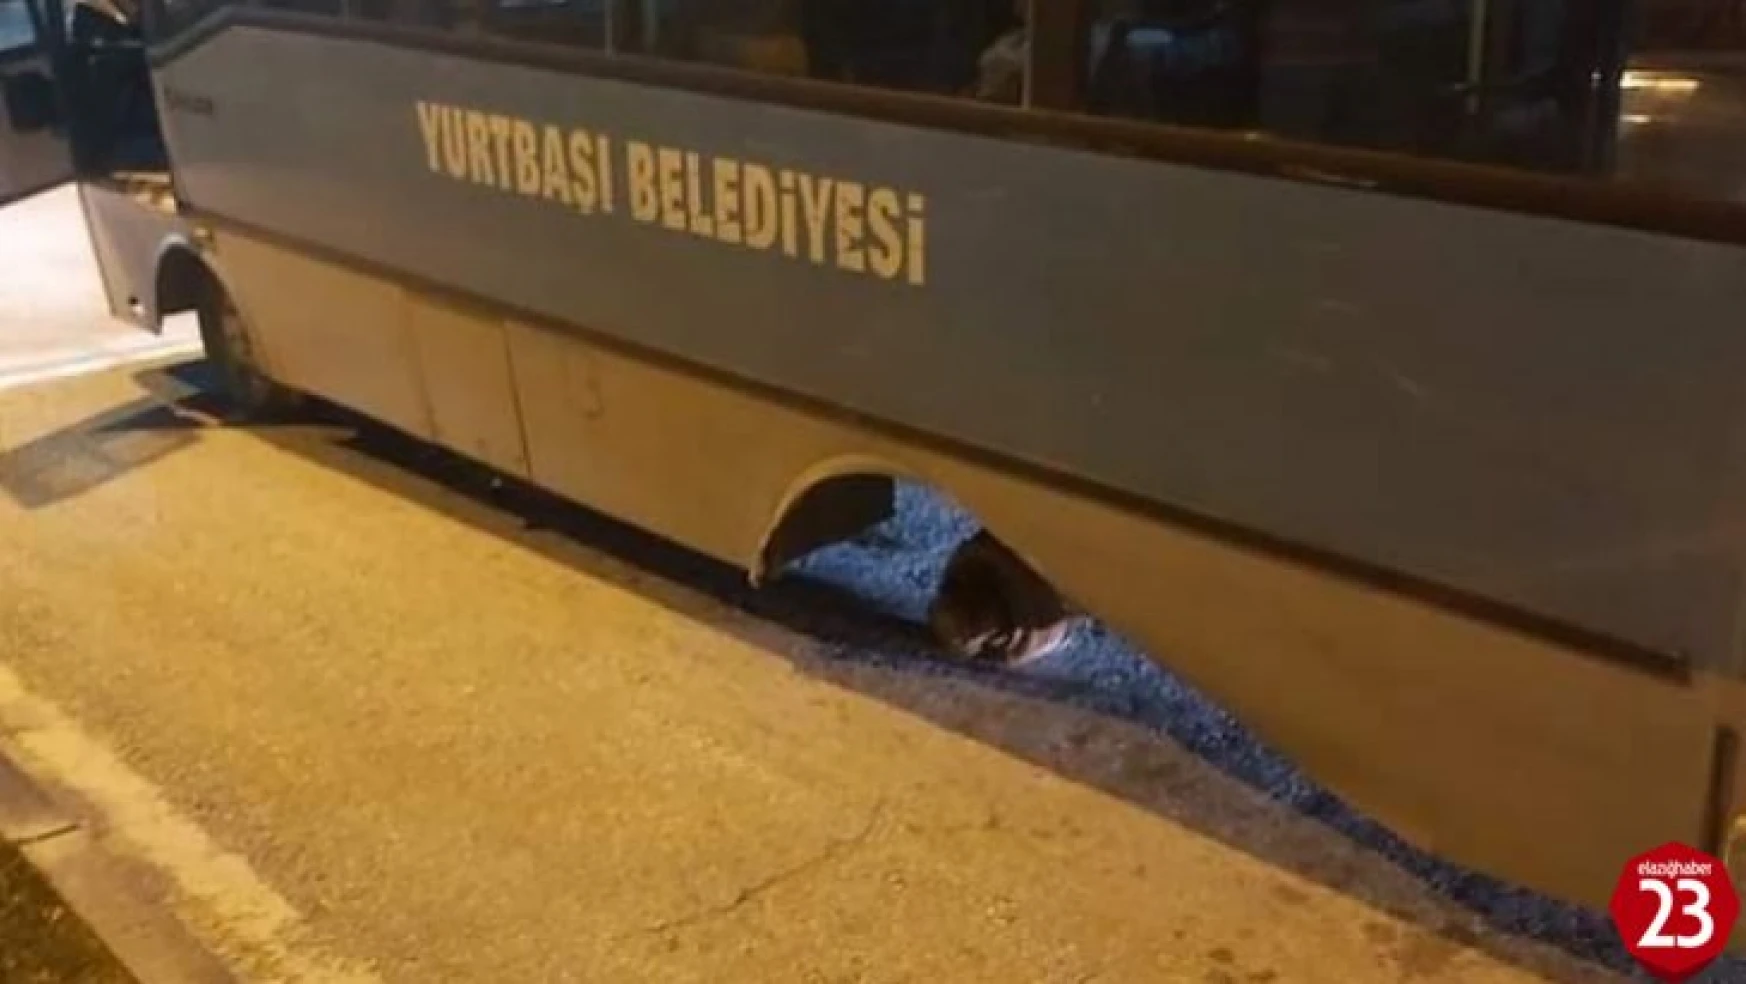 Elazığ'da yolcu dolu otobüsün arka tekeri fırladı